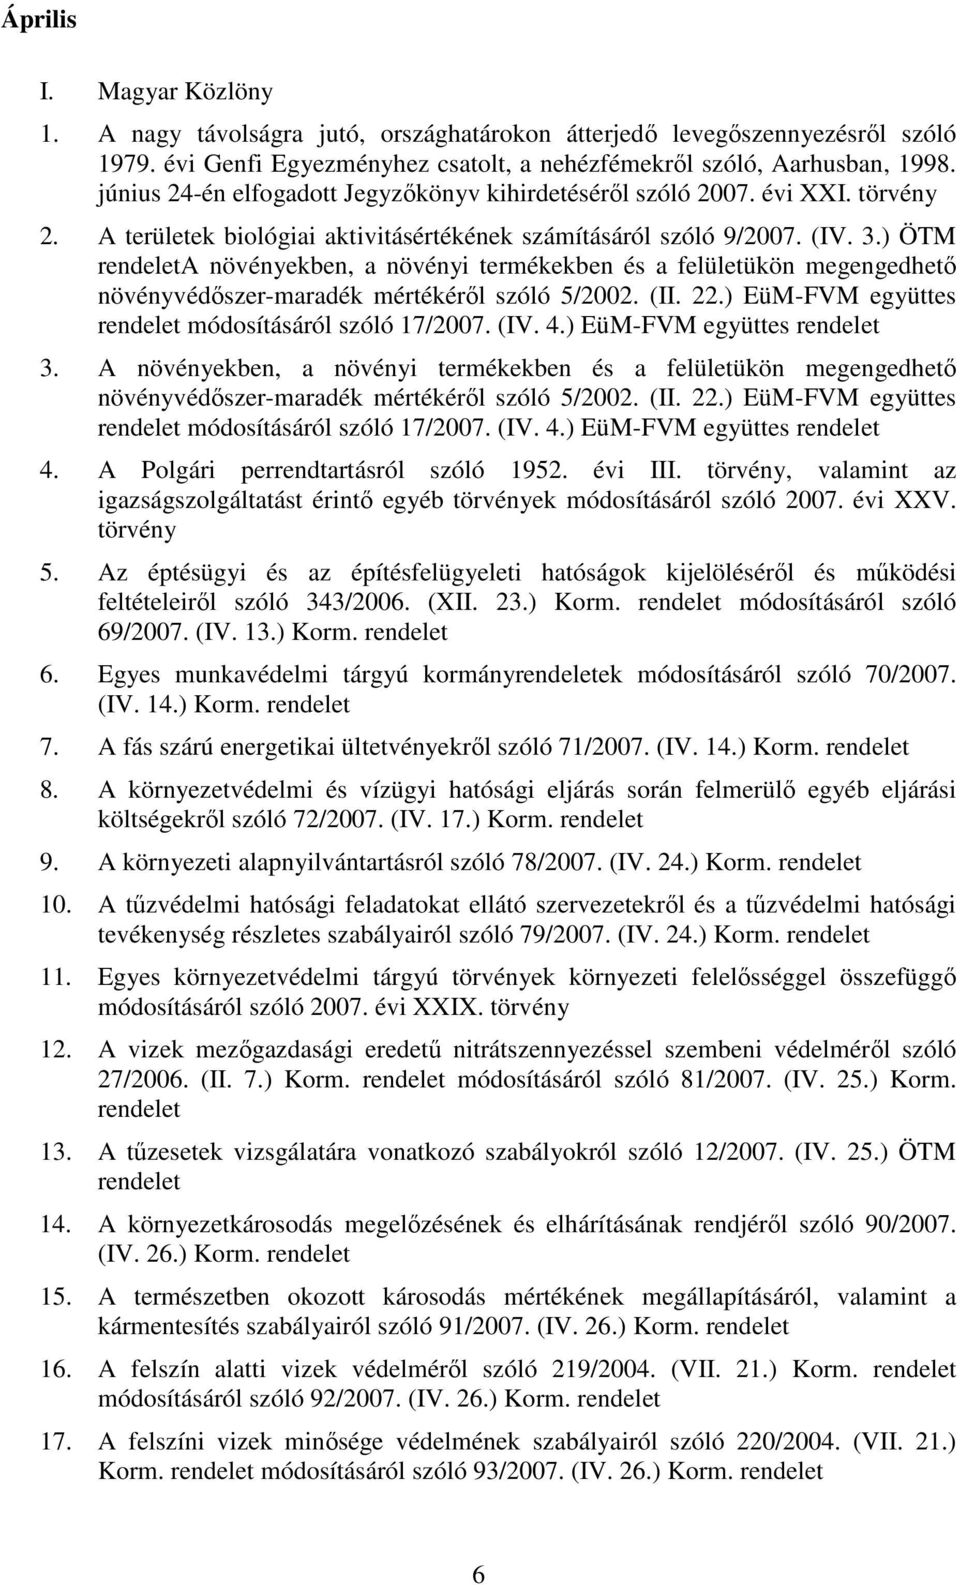 ) ÖTM A növényekben, a növényi termékekben és a felületükön megengedhetı növényvédıszer-maradék mértékérıl szóló 5/2002. (II. 22.) EüM-FVM együttes módosításáról szóló 17/2007. (IV. 4.